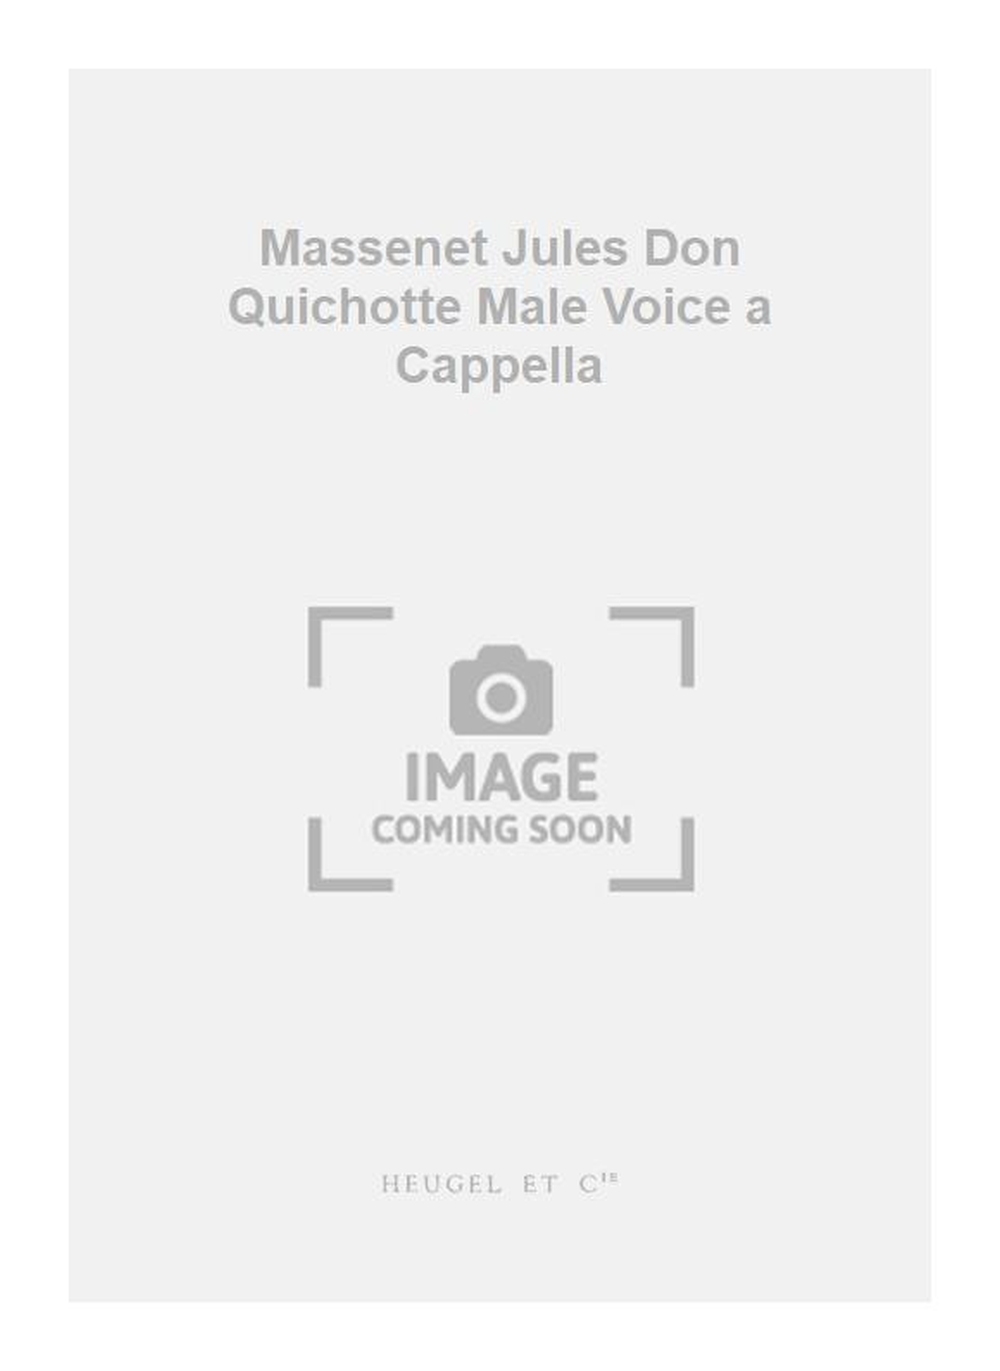 Jules Massenet: Massenet Jules Don Quichotte Male Voice a Cappella